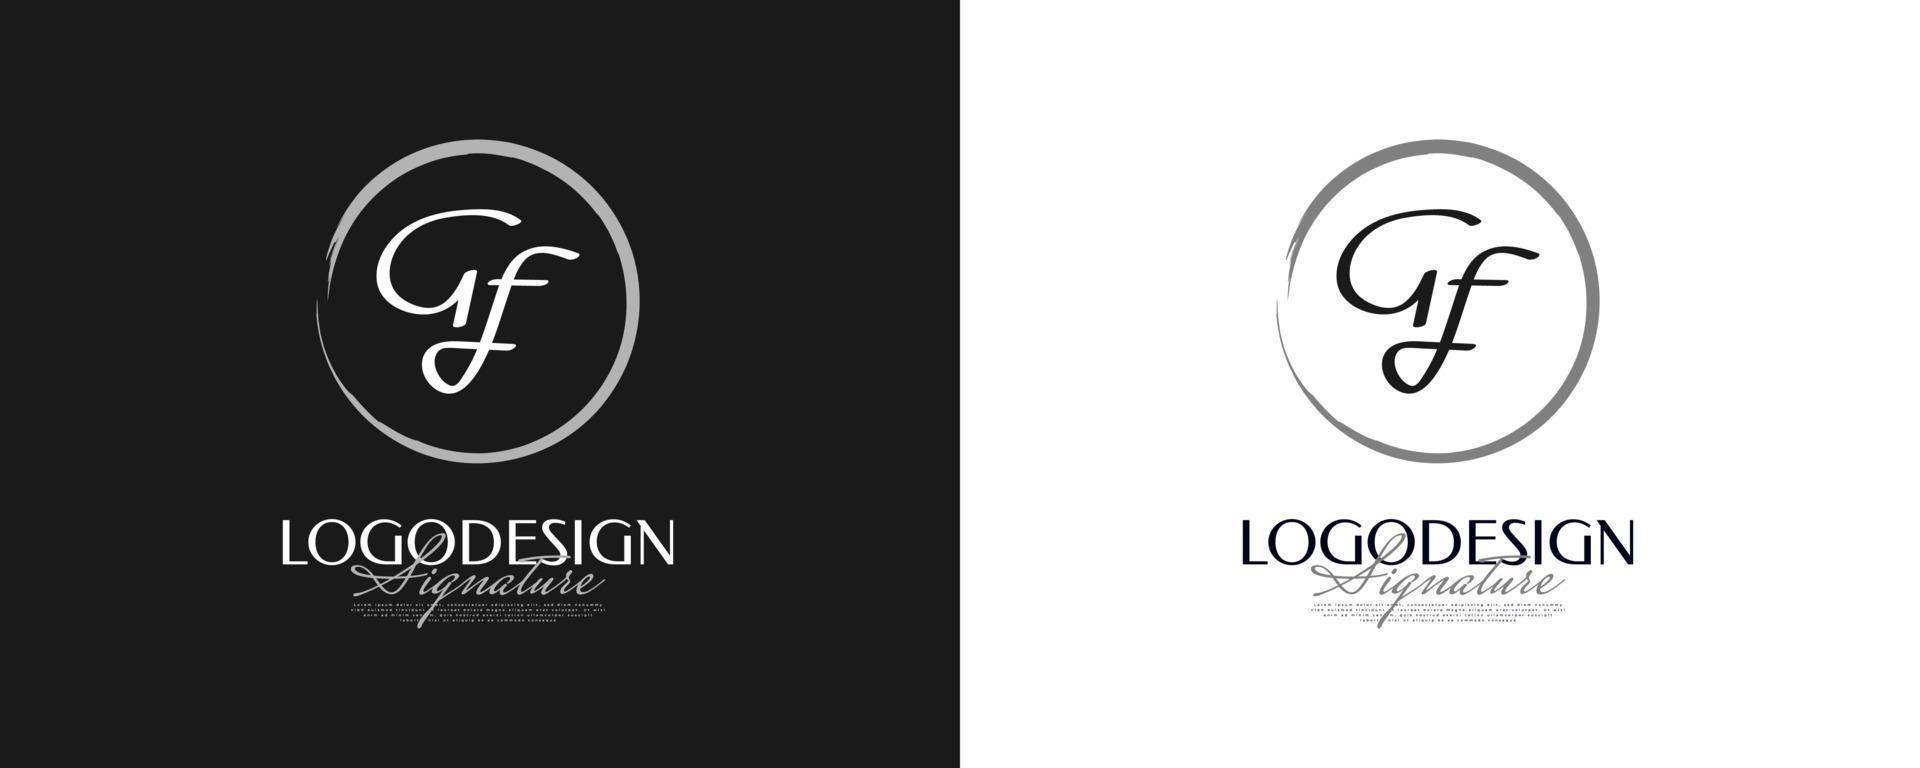 diseño inicial del logotipo g y f en un estilo de escritura elegante y minimalista. logotipo o símbolo de la firma gf para bodas, moda, joyería, boutique e identidad empresarial vector